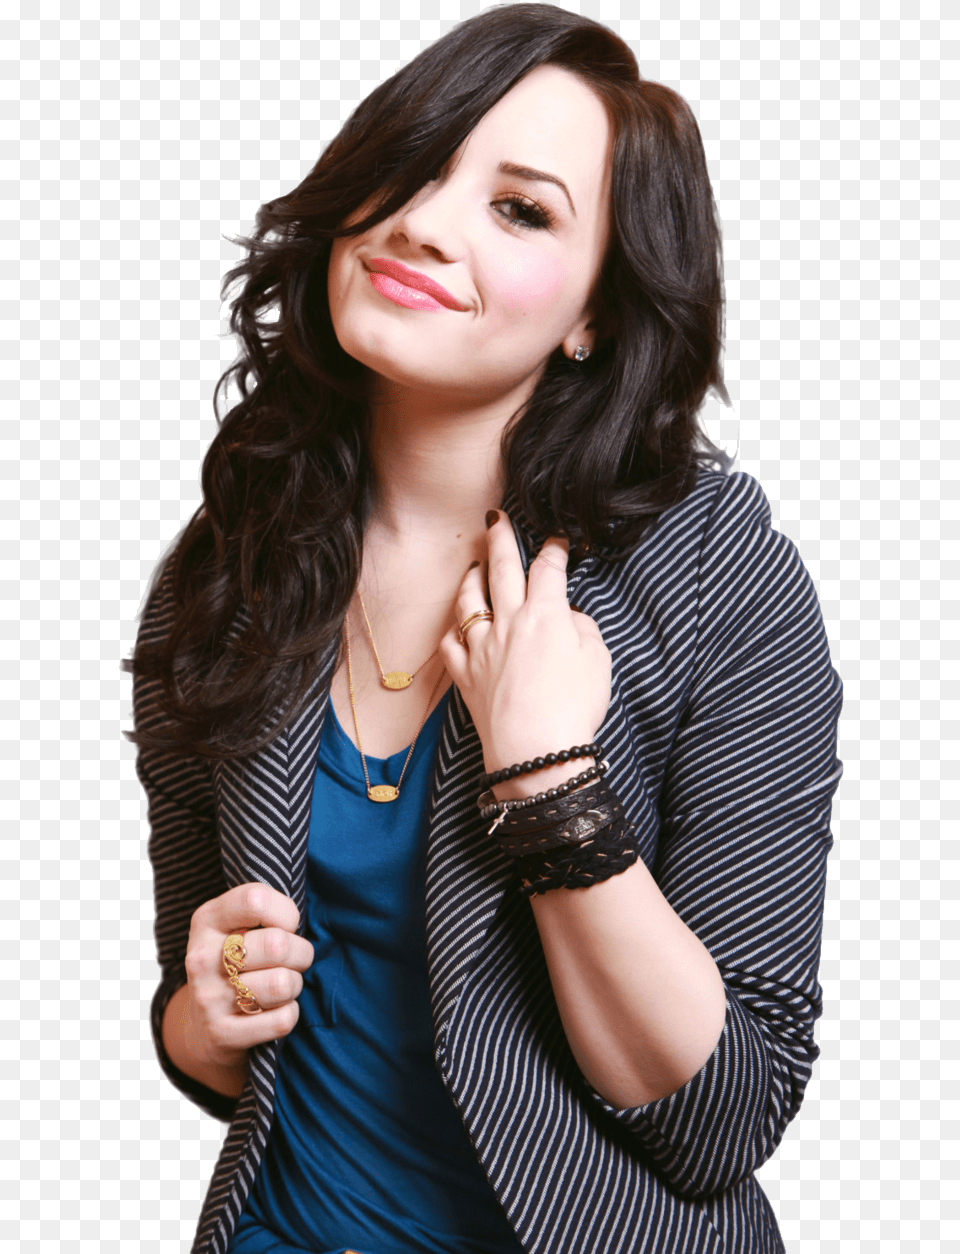 Smiling Demi Lovato Transparent Demi Lovato Heart Attack Lyrics, Woman, Smile, Person, Head Free Png